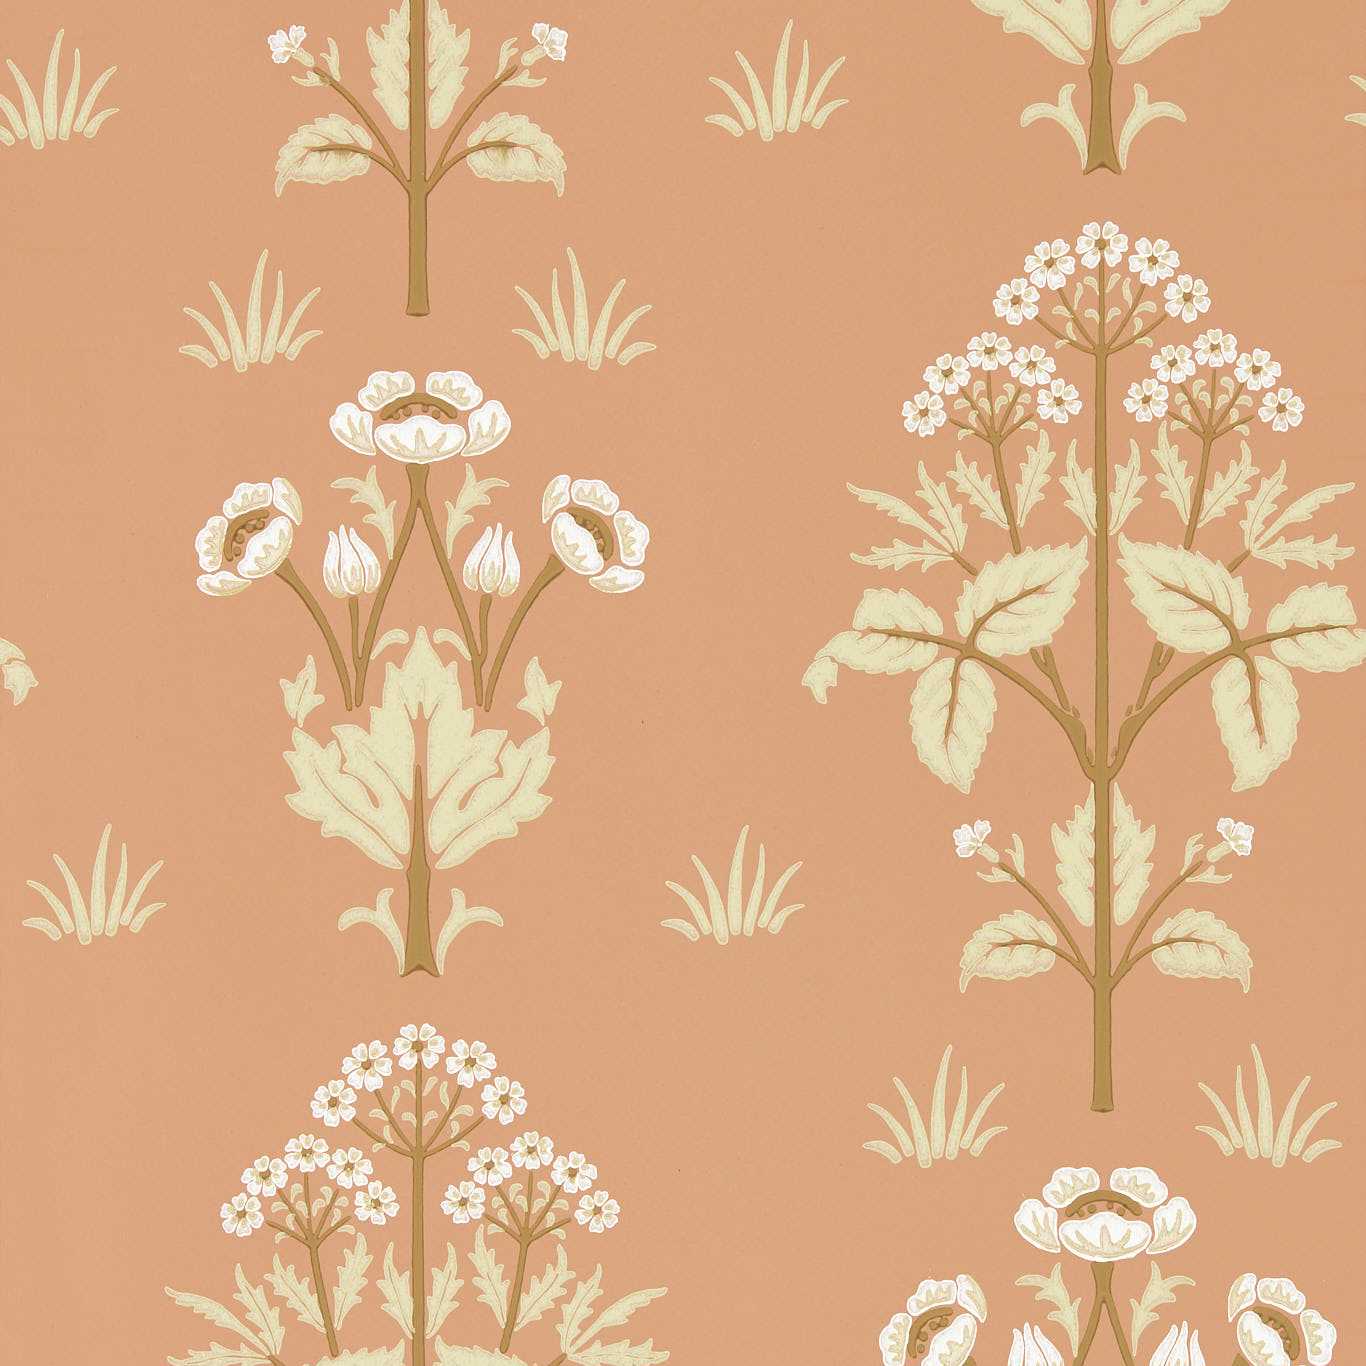 Meadow Sweet Blush Wallpaper MFRW217366 by Morris & Co